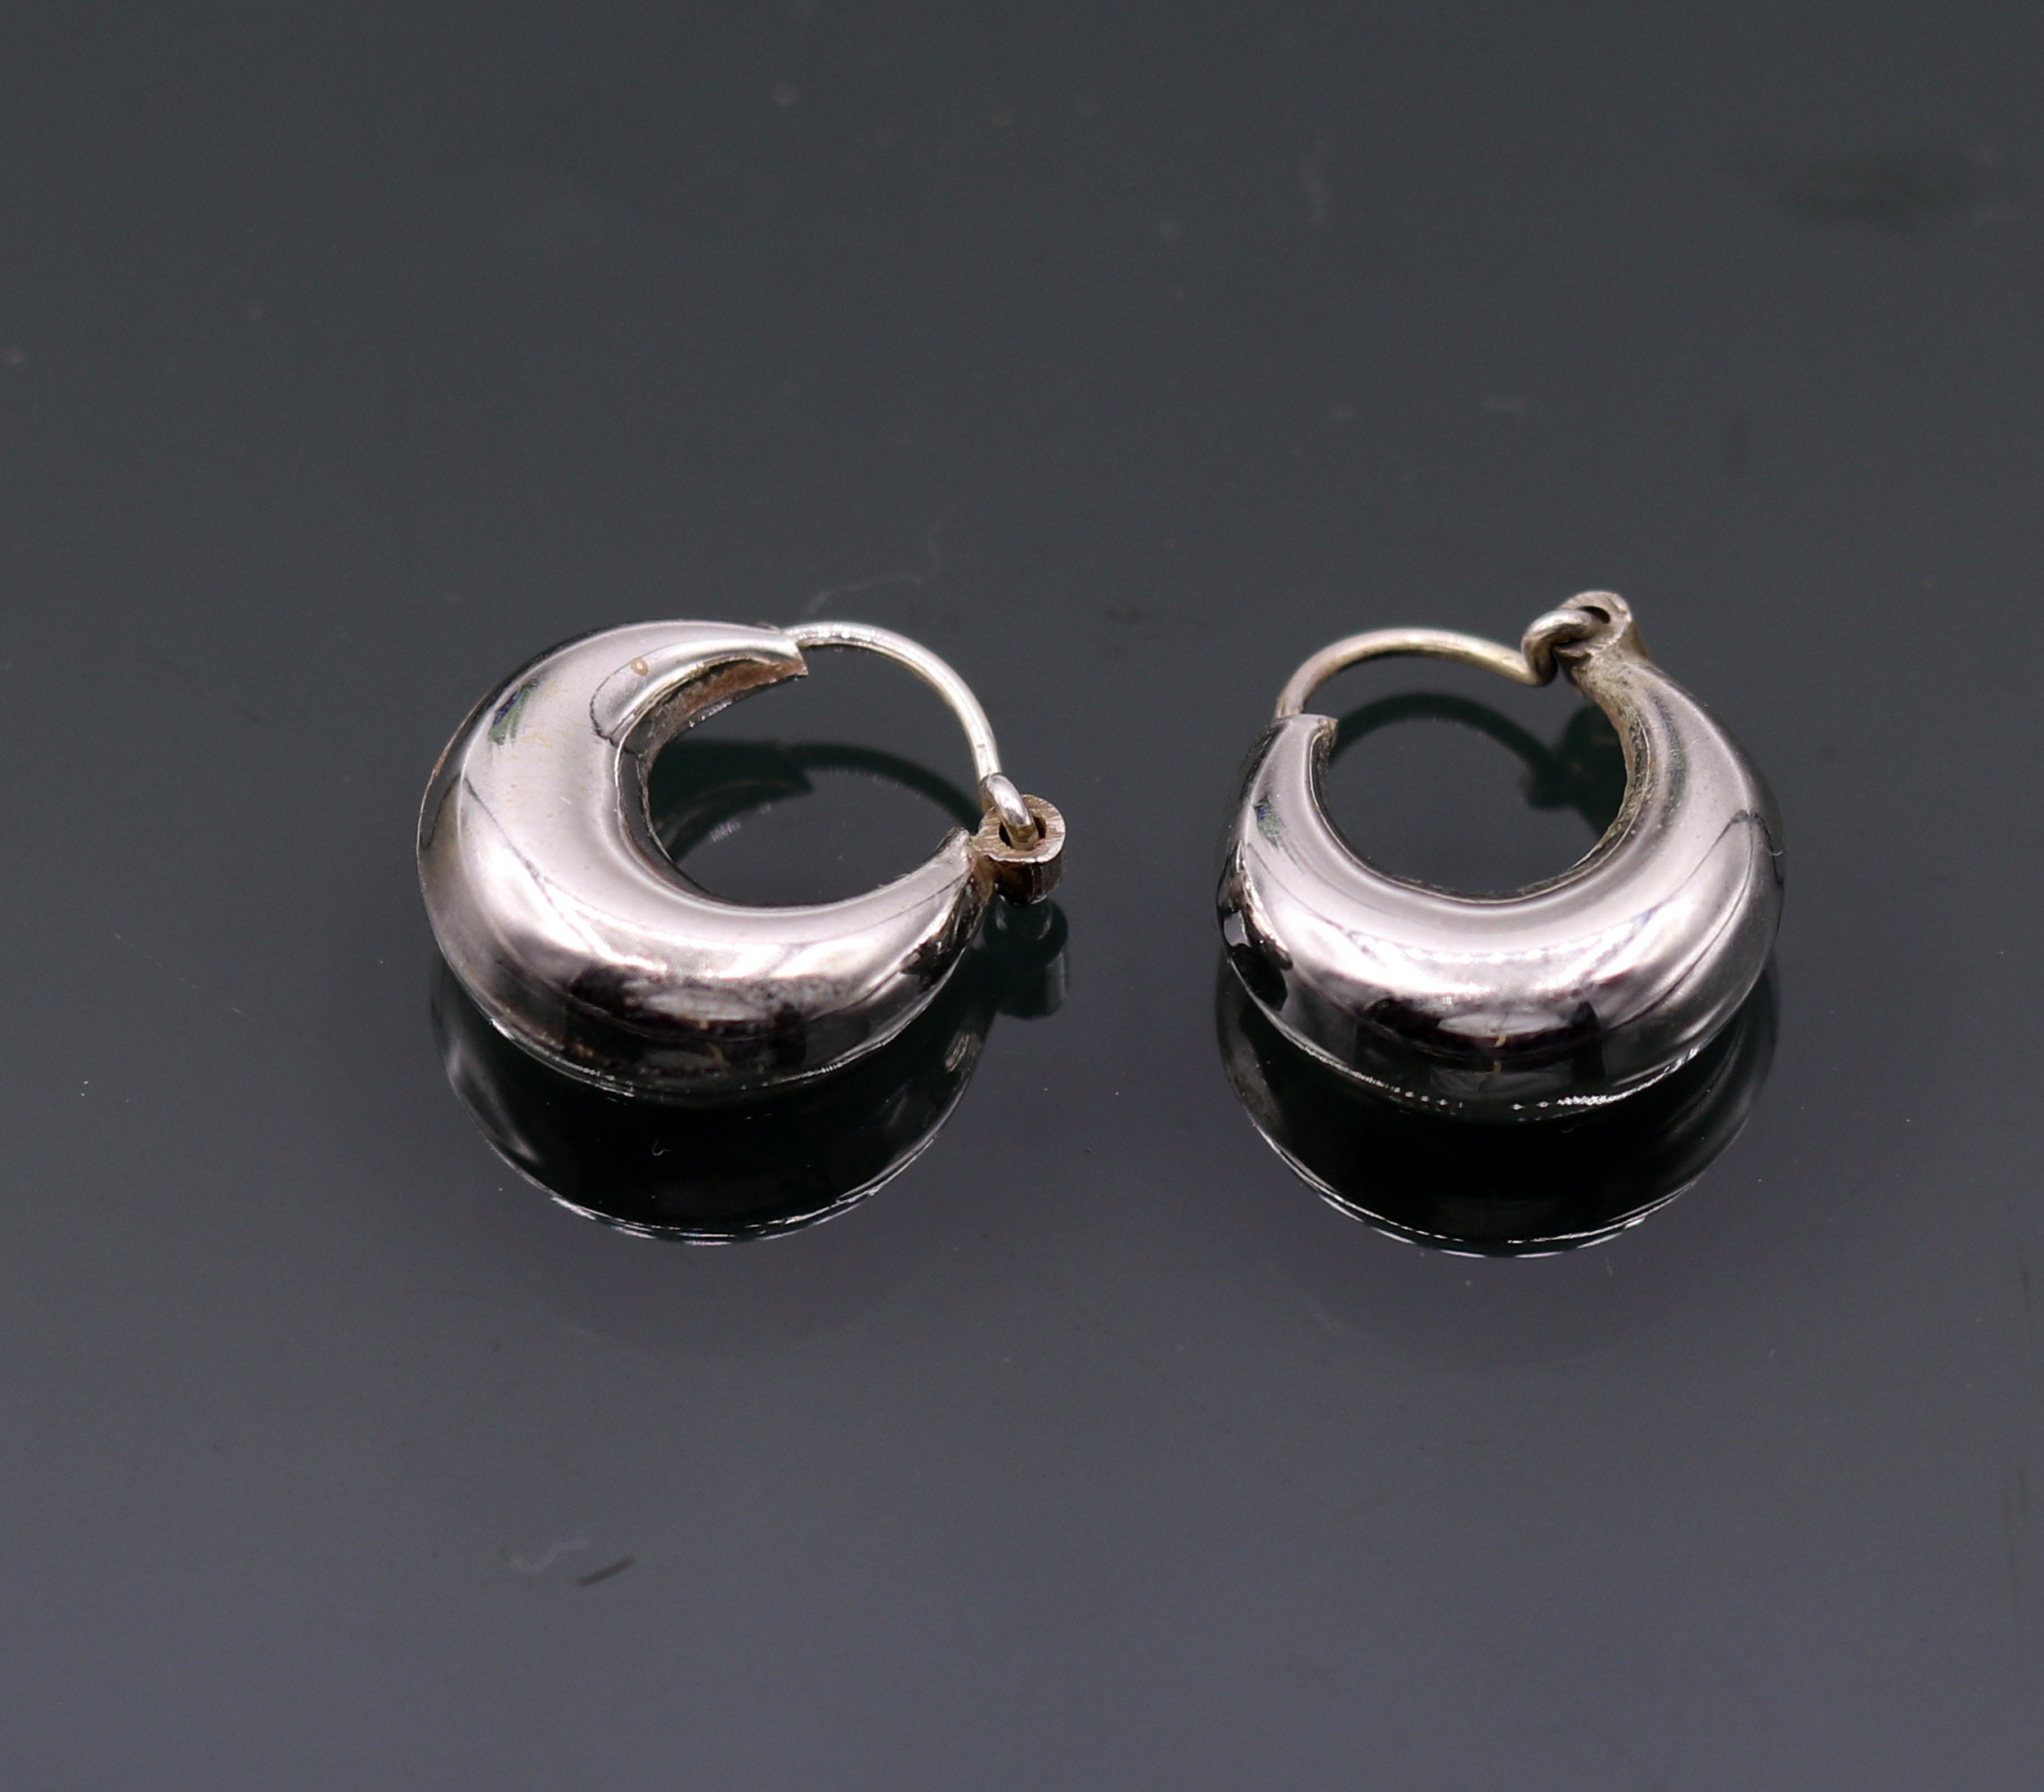 925 Sterling Silver Hoop Earrings 